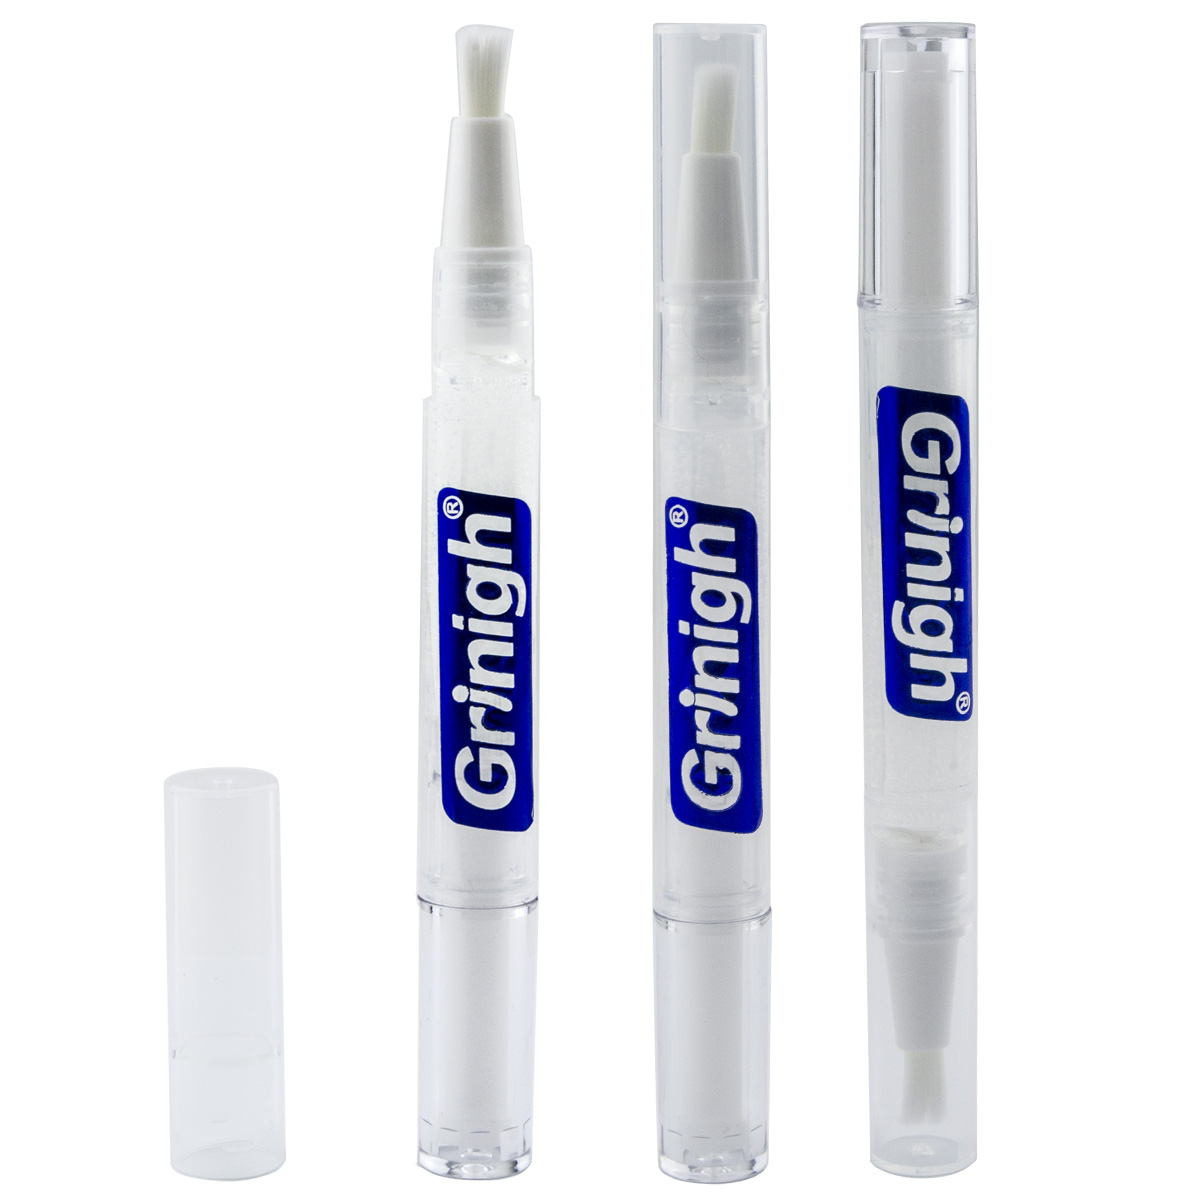 Pluma aplicadora blanqueadora de dientes blanca precisa Grin365 con ingredientes naturales - 3 Contar - Gel de fuerza concentrada (6% Peróxido de hidrógeno)